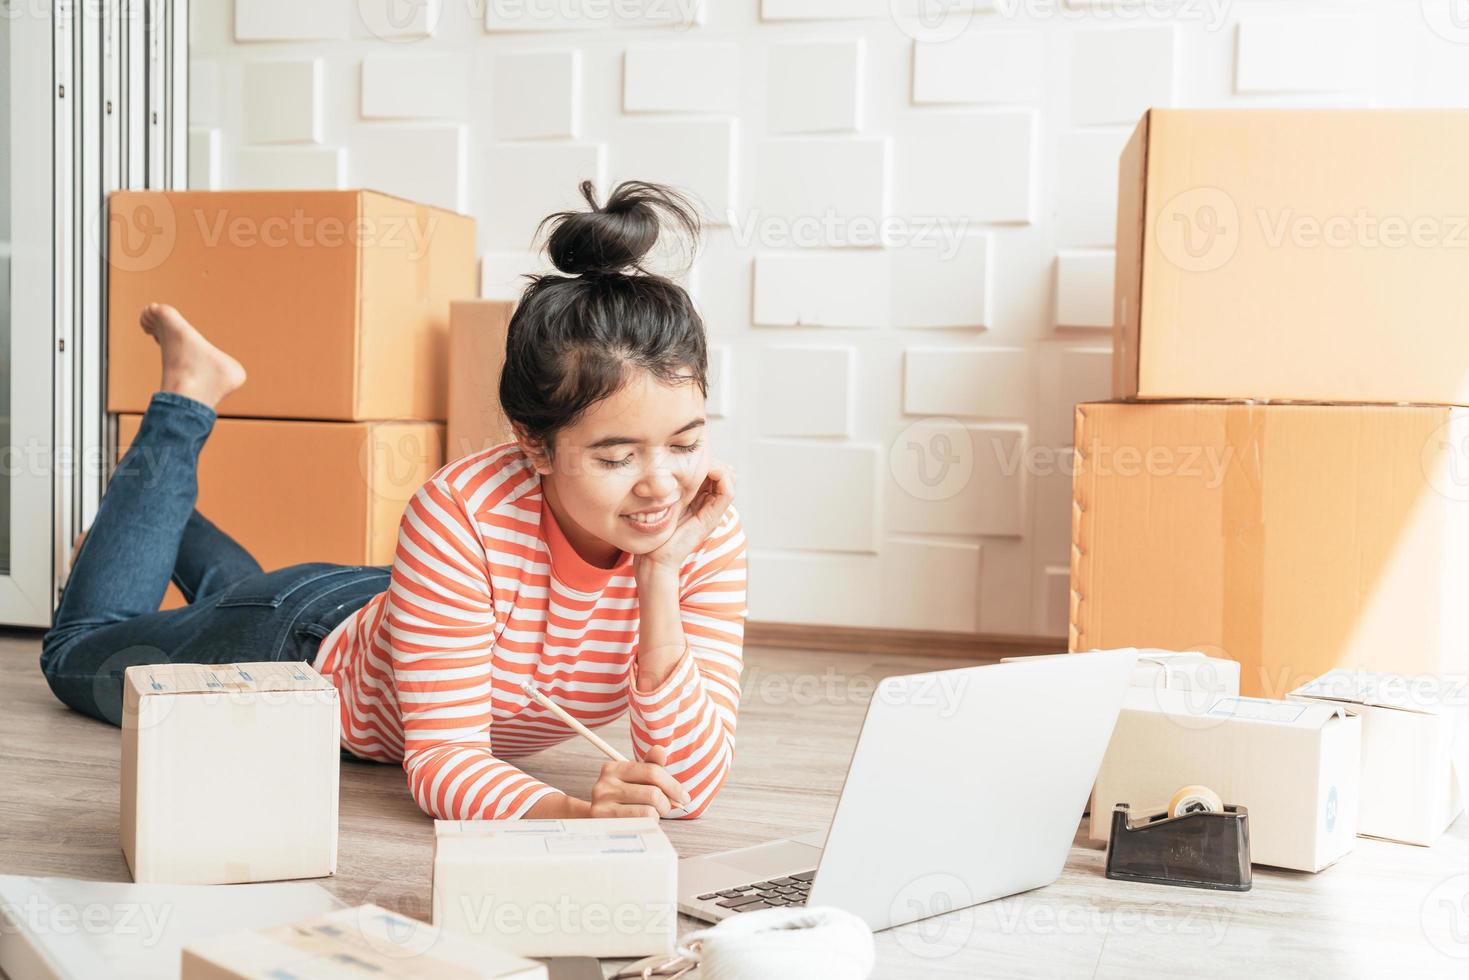 Proprietário de empresa mulher asiática trabalhando em casa com caixa de embalagem no local de trabalho - empreendedor de compras online de pmes ou conceito de trabalho freelance foto